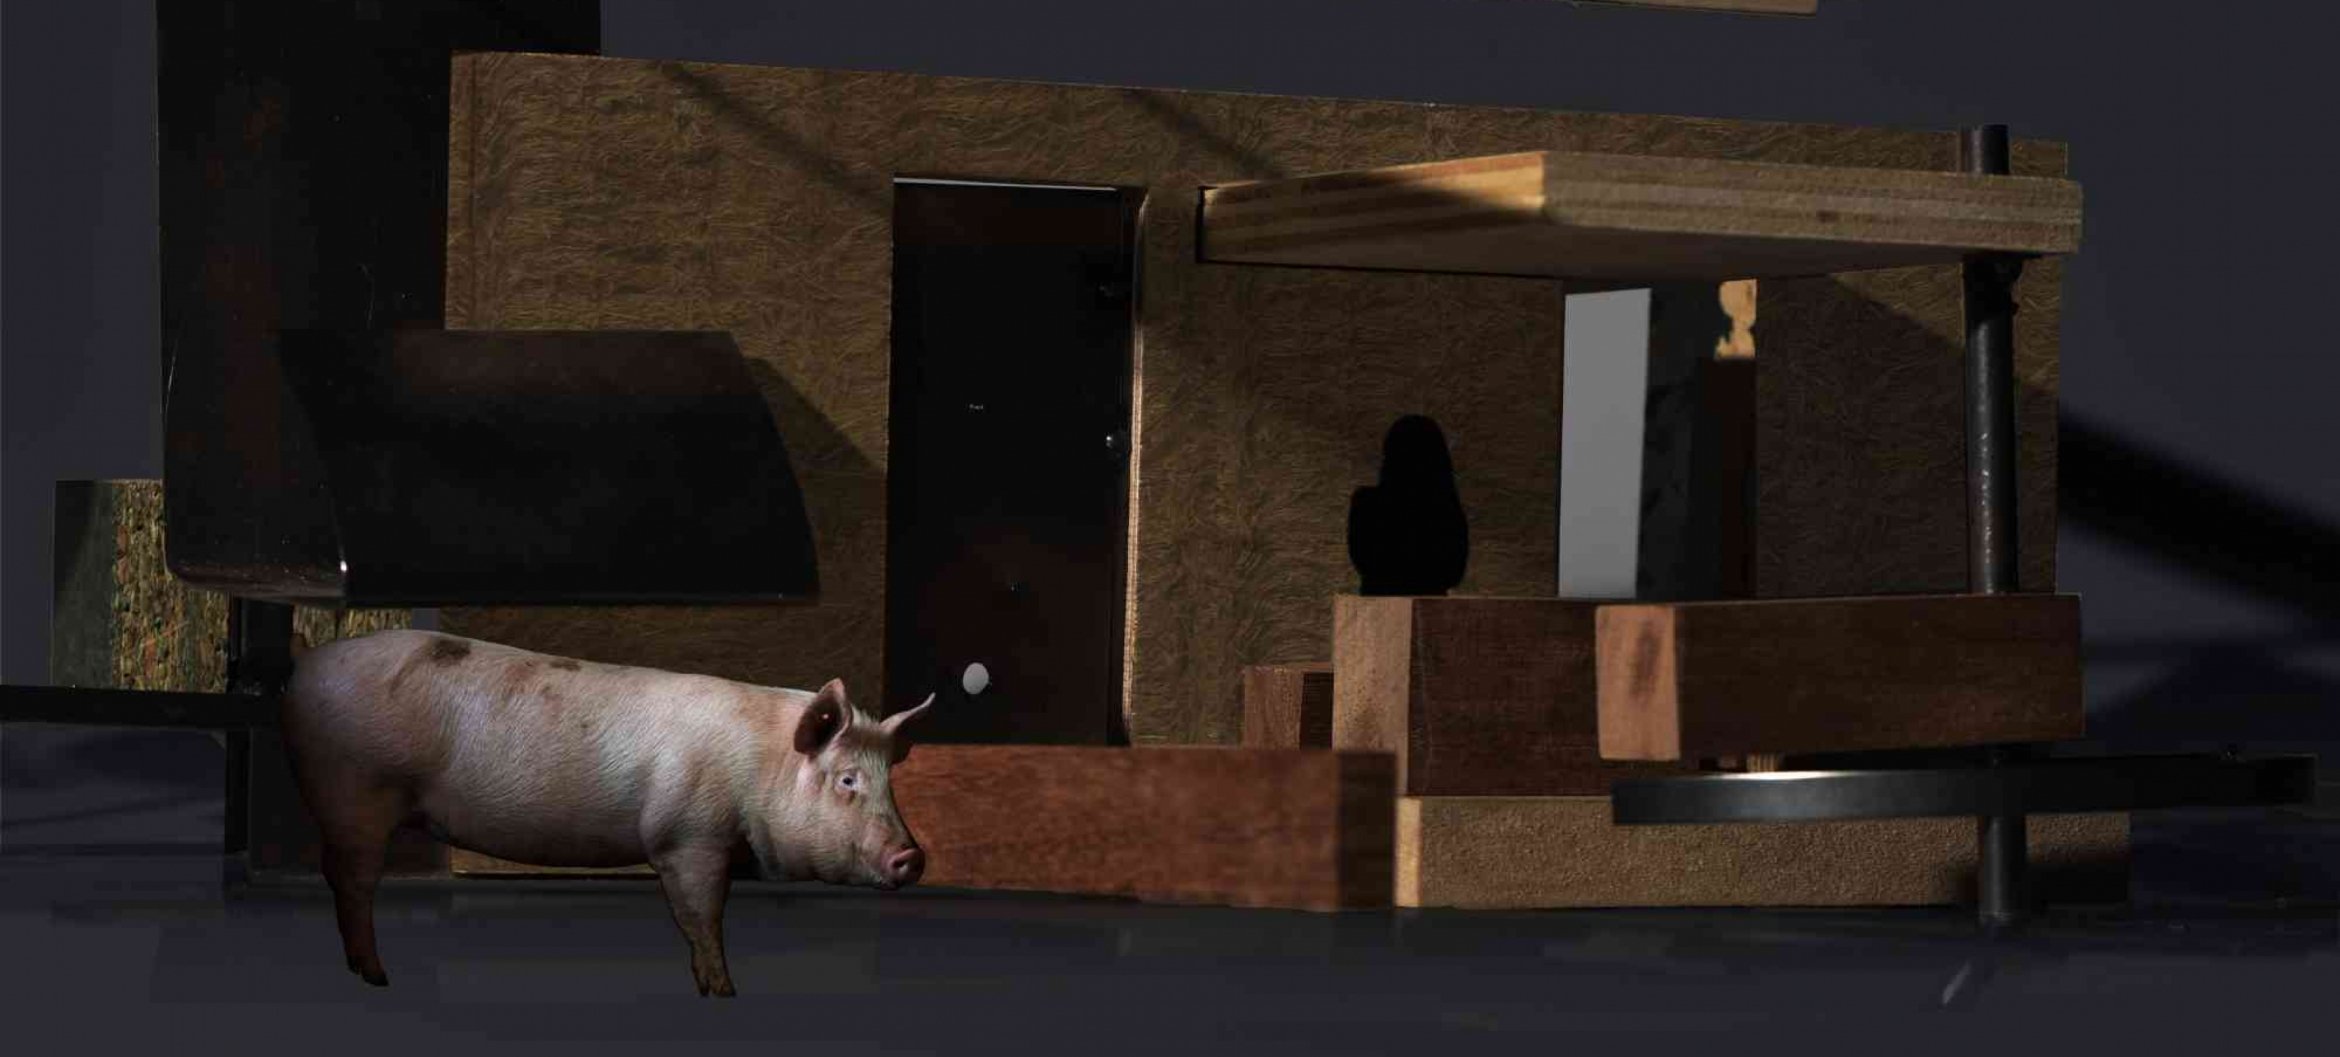 Leven tussen varkens – ontwerpen voor mens en dier